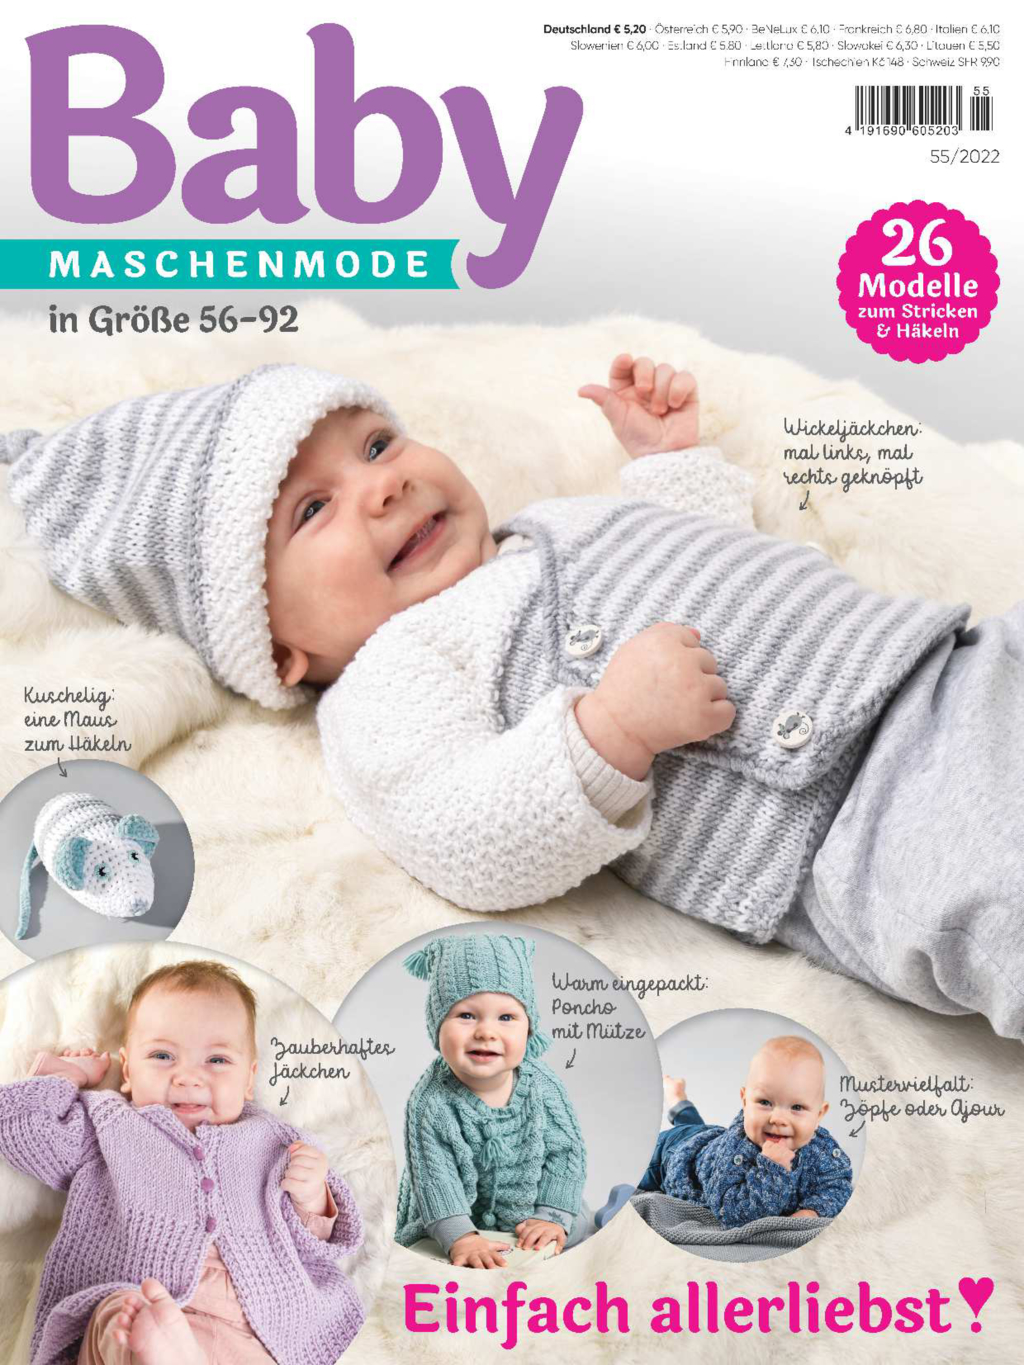 E-Paper: Baby Maschenmode 55/2022 - Einfach allerliebst